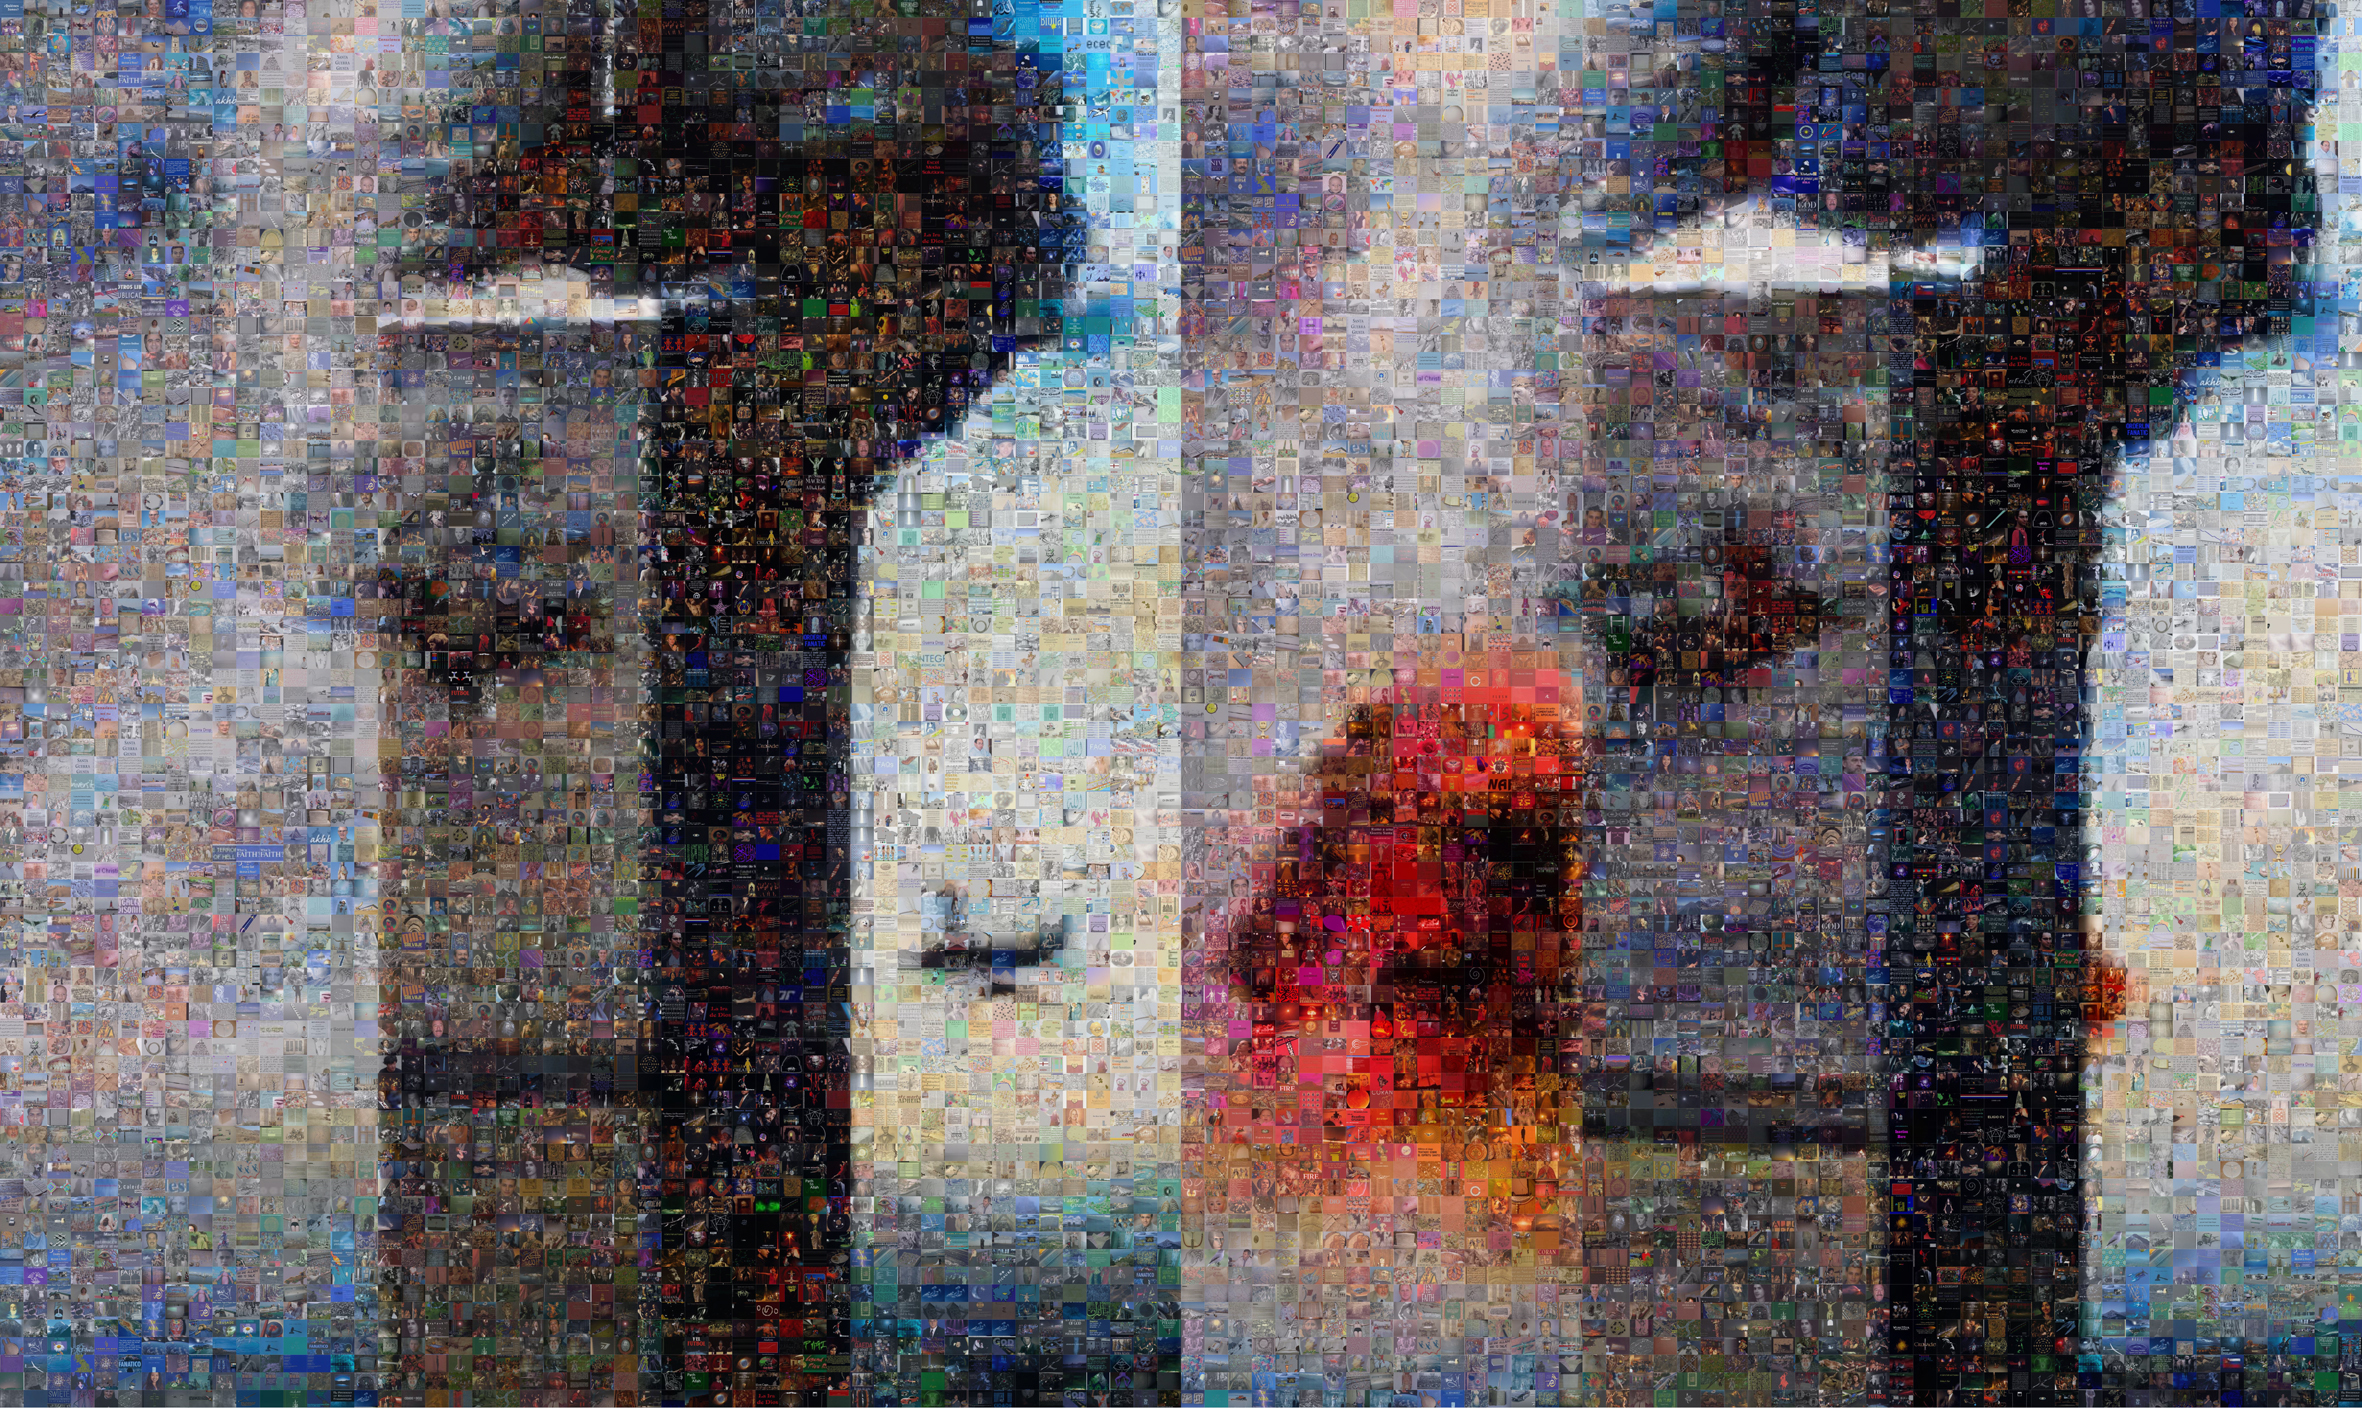 Joan Fontcuberta, GOOGLEGRAM: 11-S NY, 2005. Photos de la collision du 11 Septembre. Les photographies ont été reconstruites avec Photomosaic, un logiciel gratuit lié à Google Image. Le résultat est une composition de 8 000 images tirés d’Internet et qui correspondent à la recherche des termes « God », « Yahve » et « Allah ».